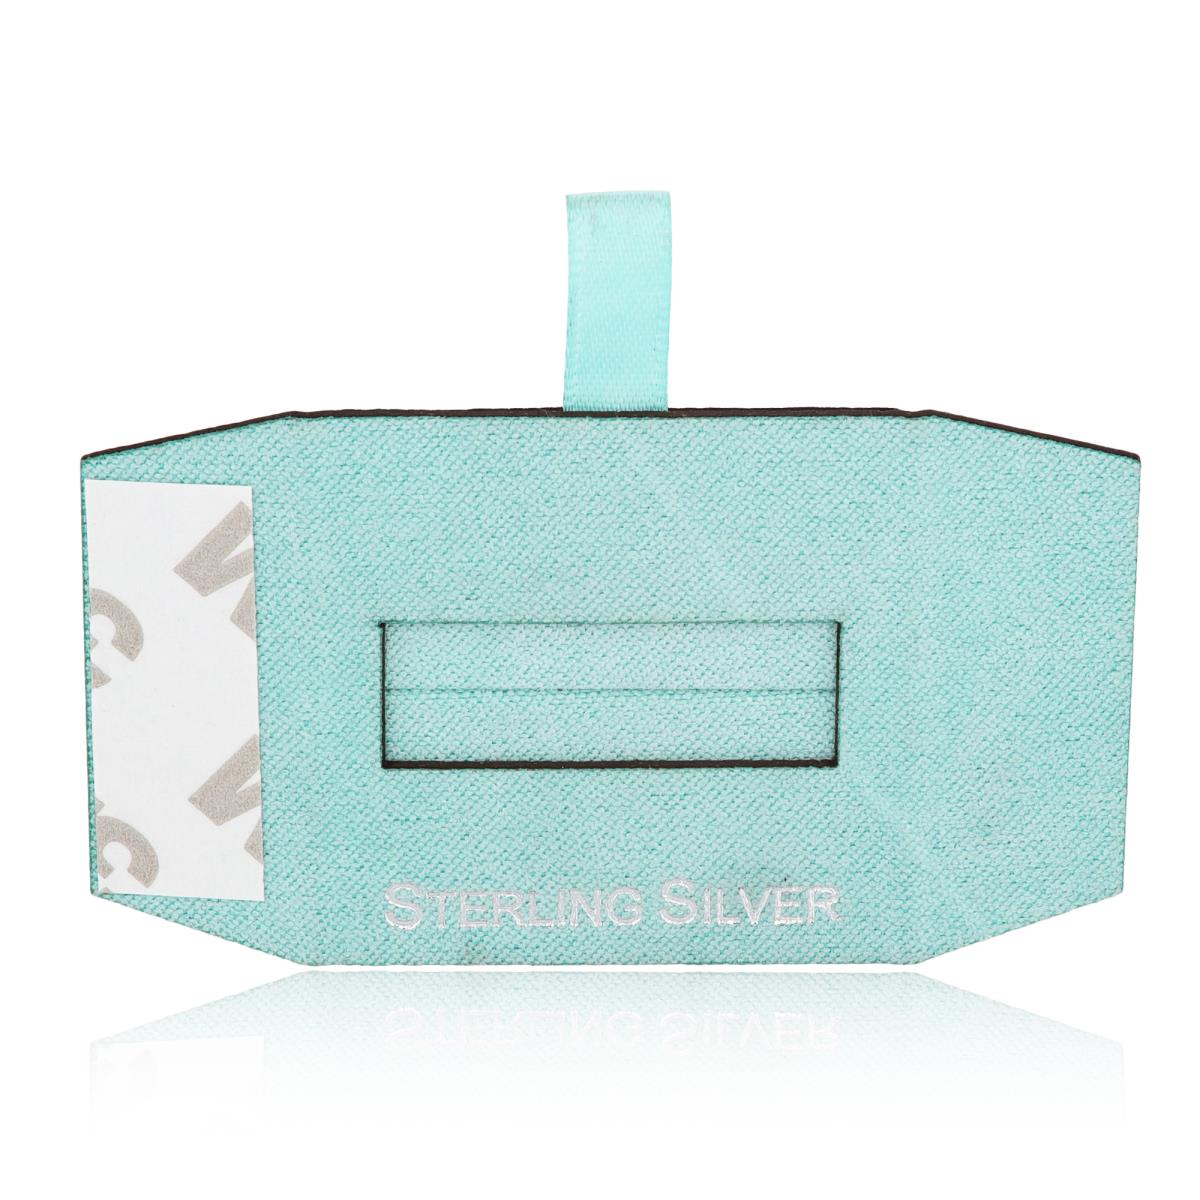 Mint Sterling Silver, Silver Foil Ring Insert (Box B06-159/Mint/D)